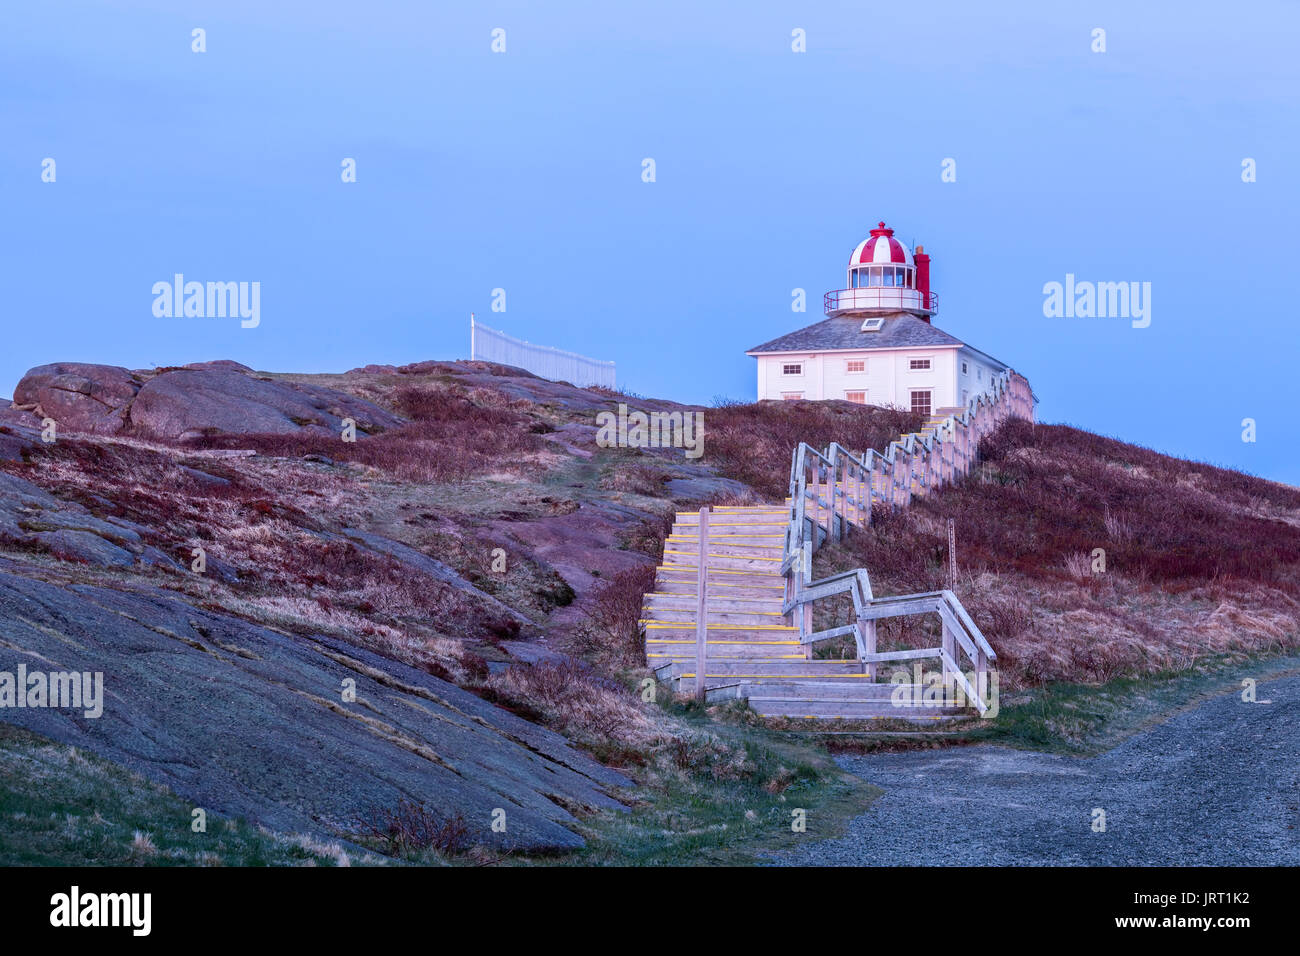 1836 El faro de Cabo Spear Sitio Histórico Nacional de Canadá en el alba. Cabo Spear, Saint John's, Terranova y Labrador, Canadá. Foto de stock